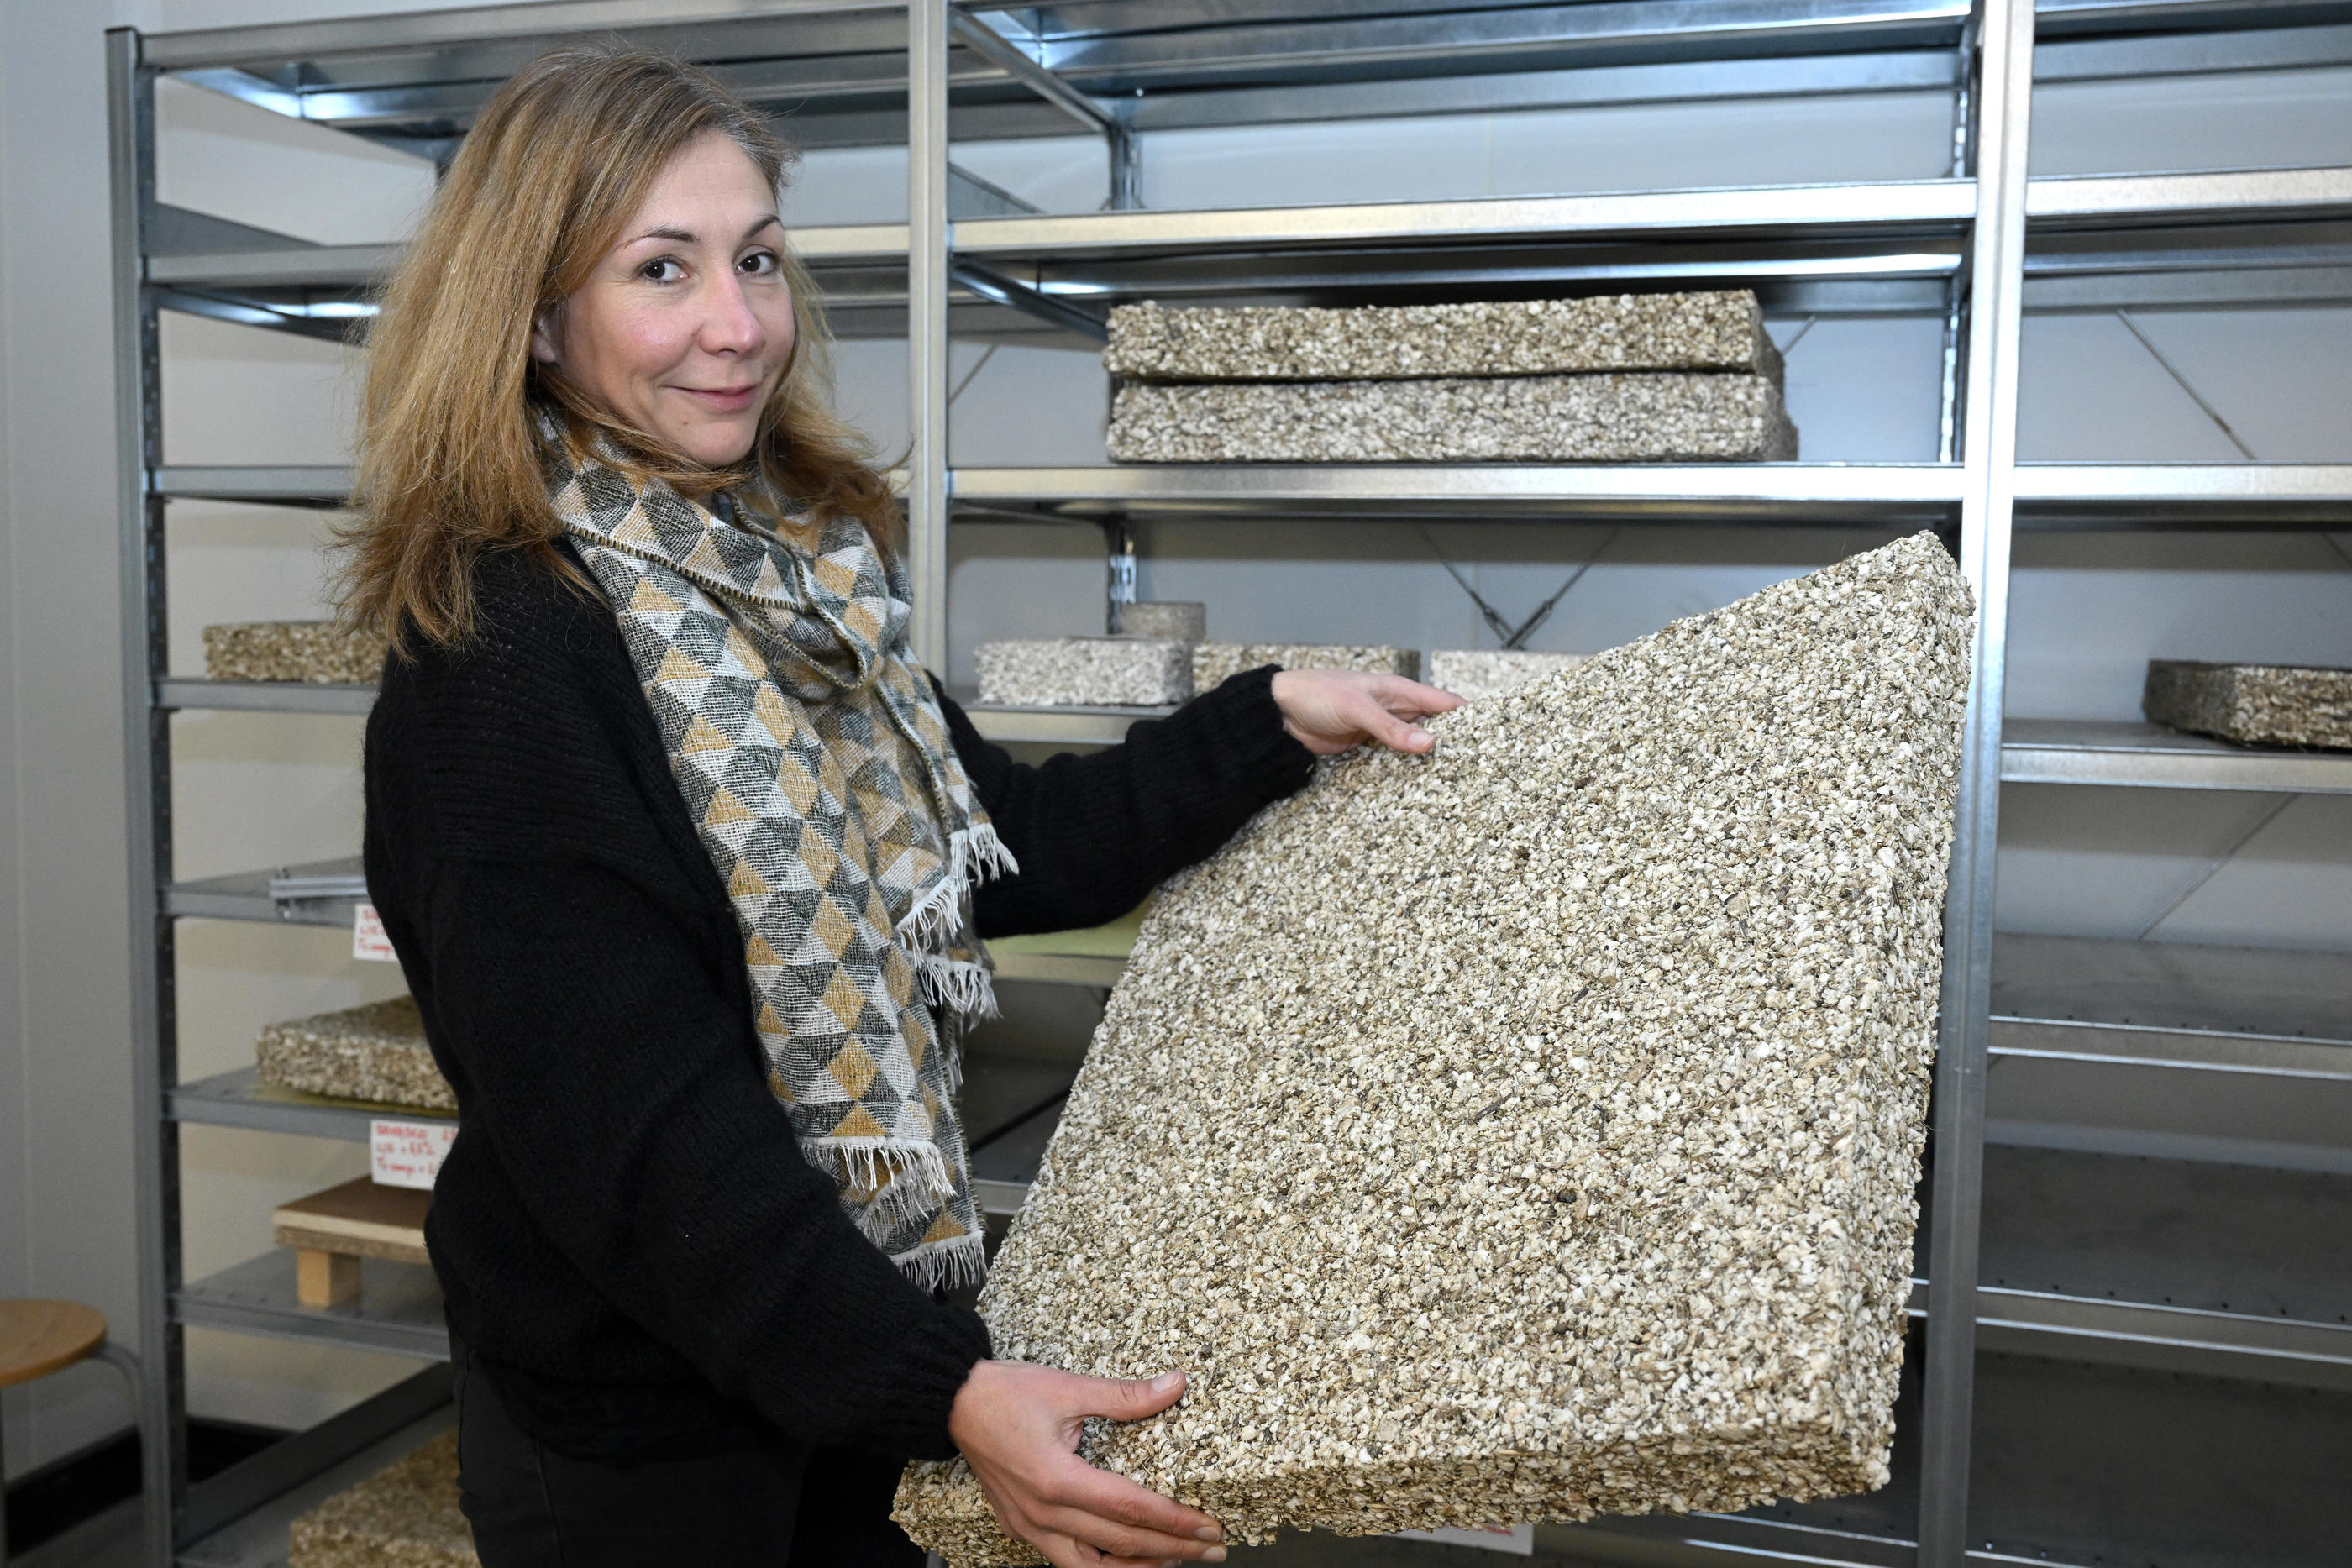 Camille Magniont, chercheuse à l’IUT de Tarbes sur la durabilité des matériaux, a préféré ces déchets de maïs et de tournesol en raison de leur grande disponibilité locale. LP/Rémy Gabalda